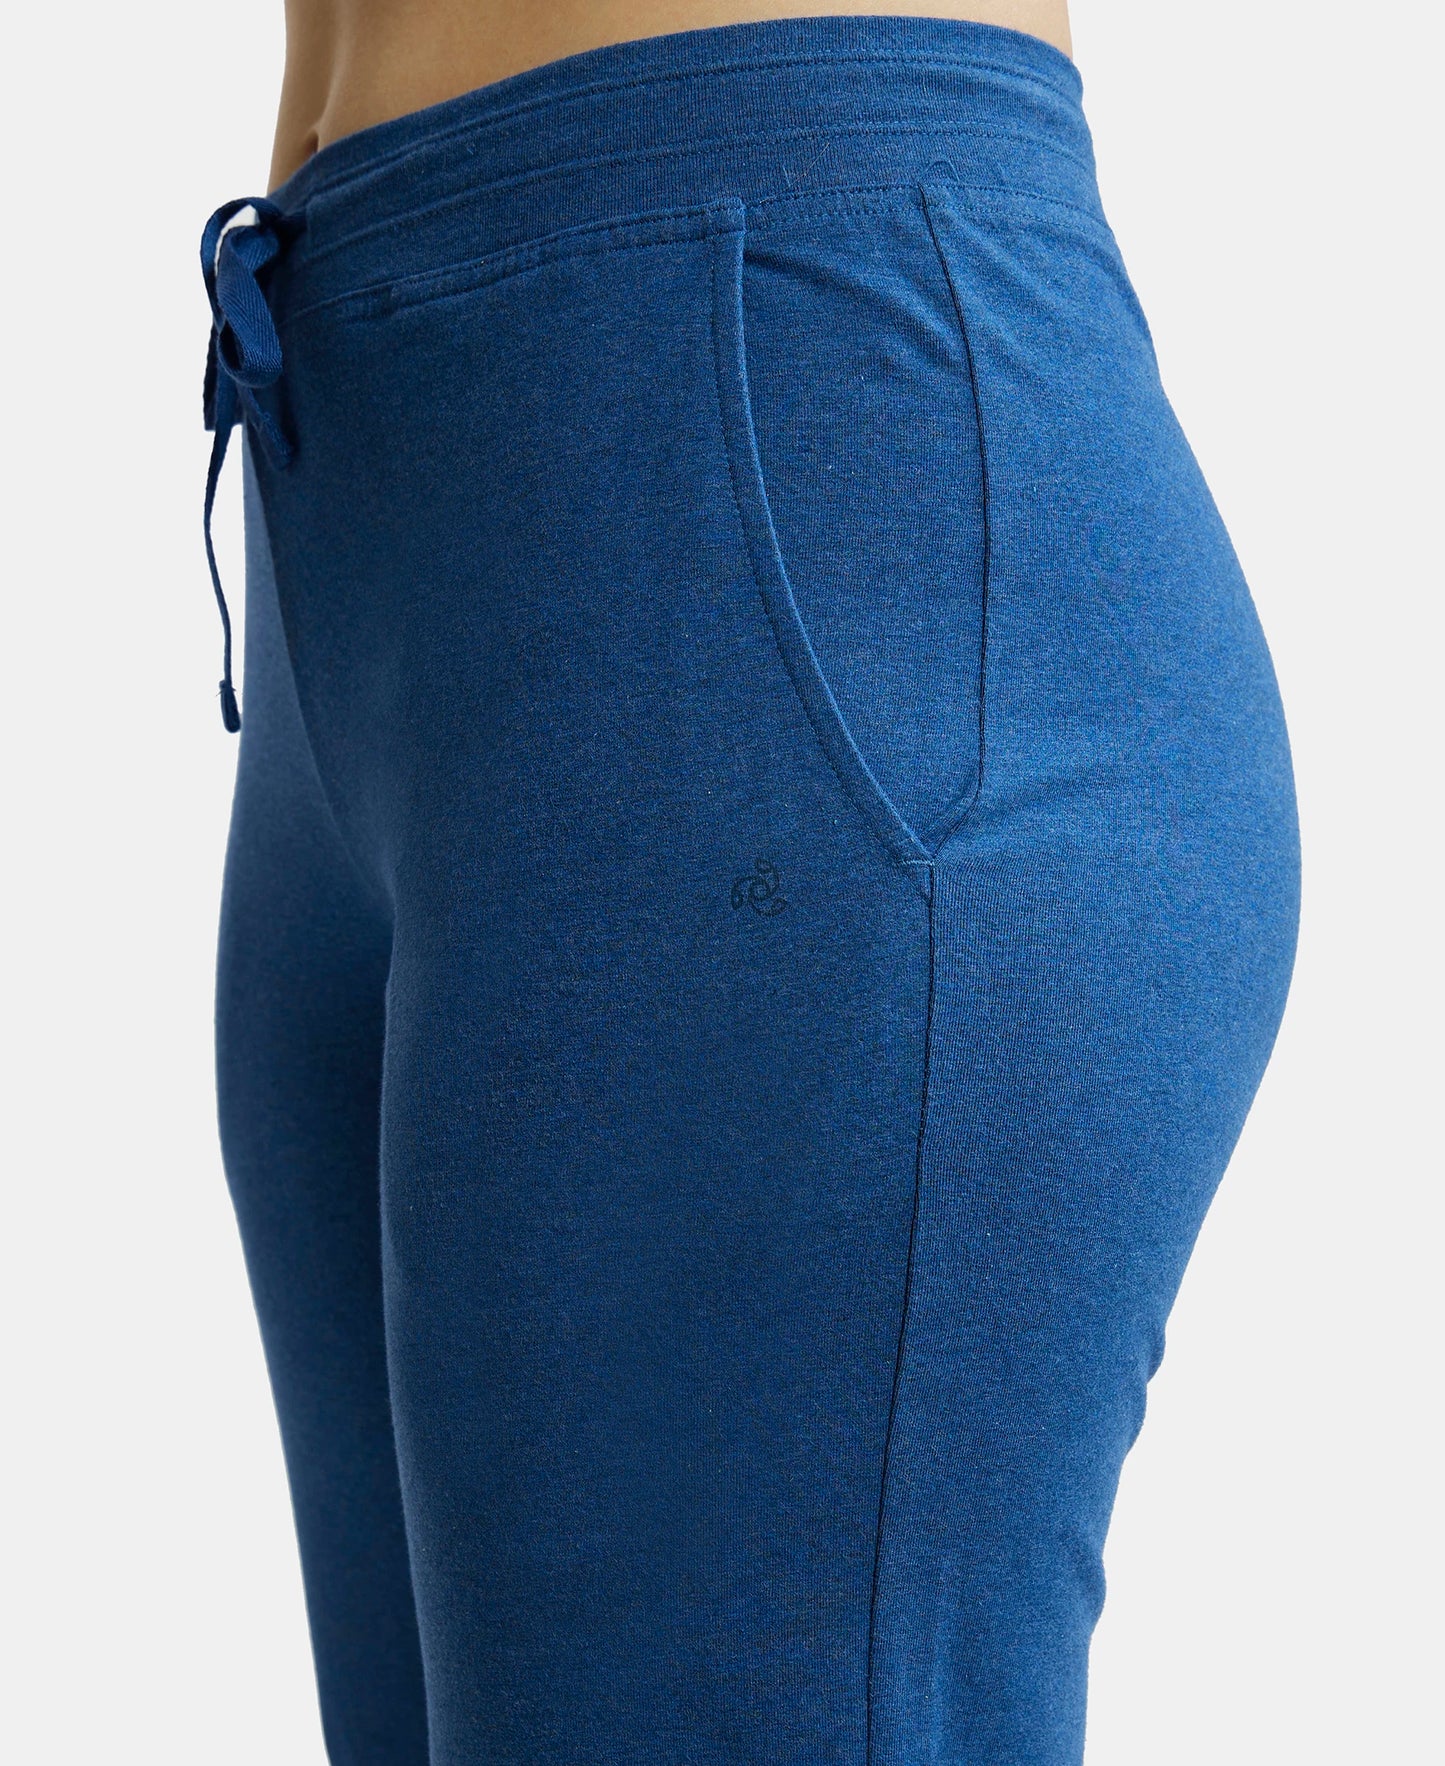 Super Combed Cotton Elastane Relaxed Fit Trackpants With Side Pockets - Vintage Denim Melange-7